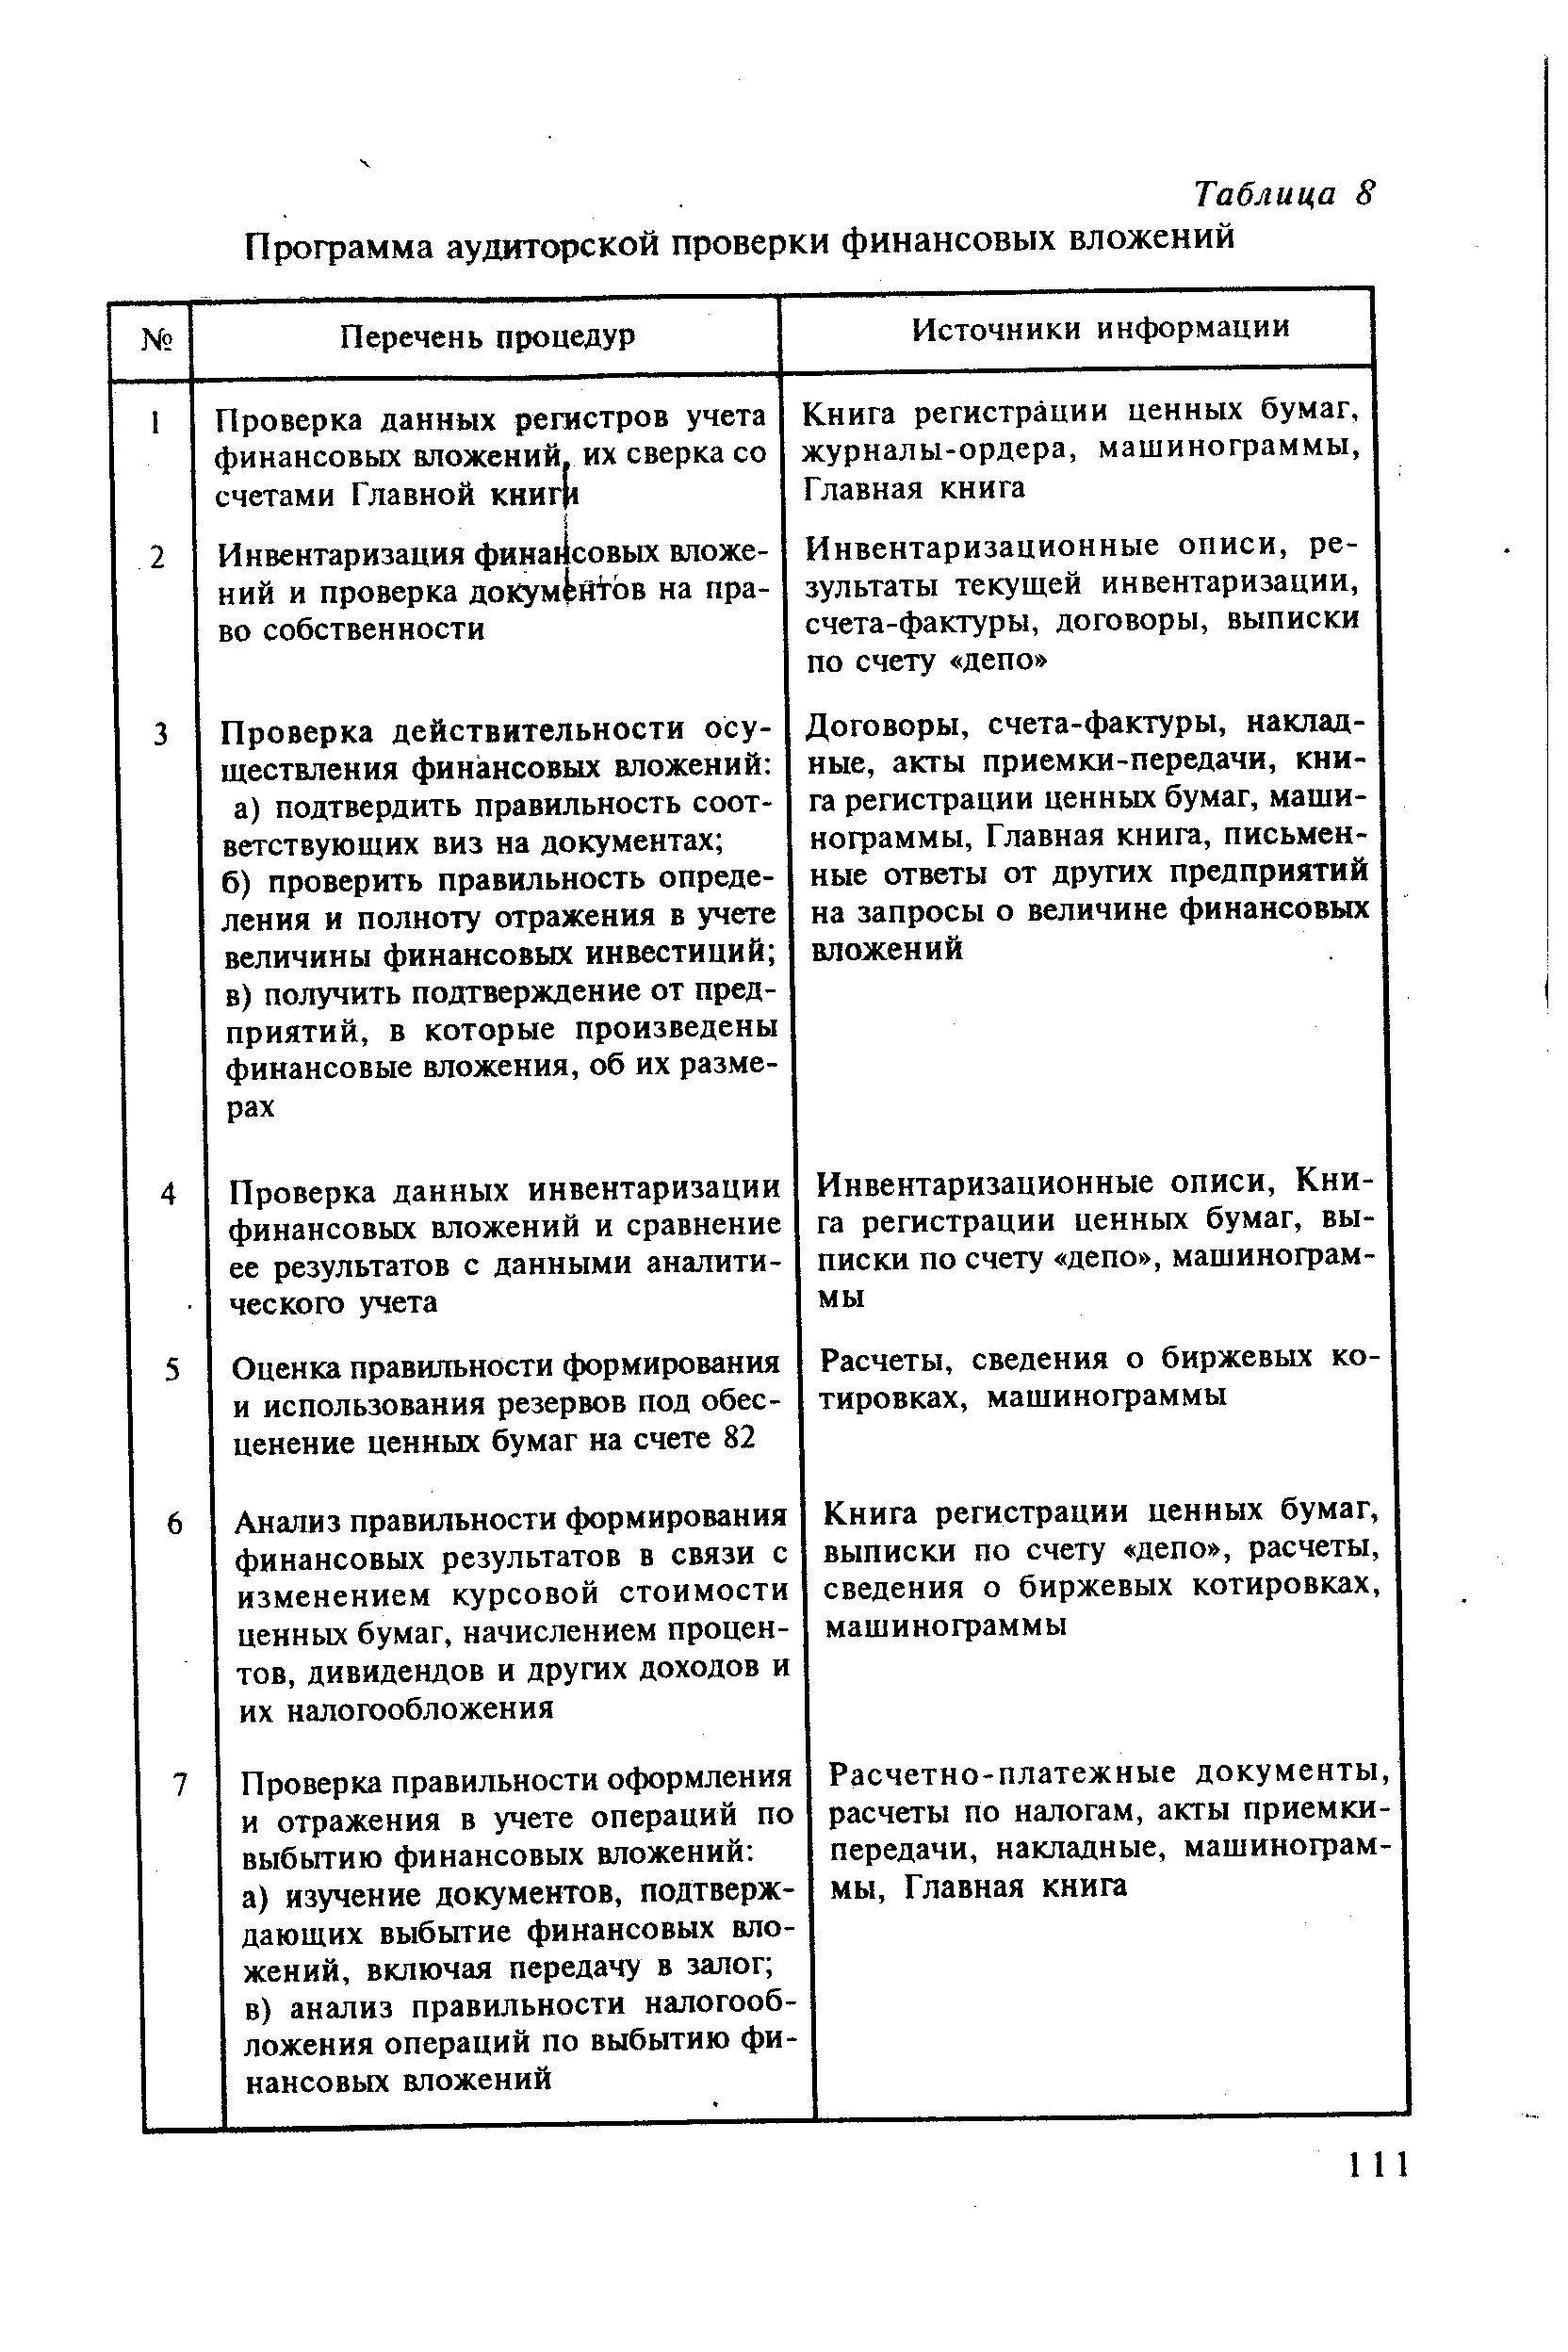 Таблица 8 Профамма <a href="/info/197162">аудиторской проверки финансовых</a> вложений
